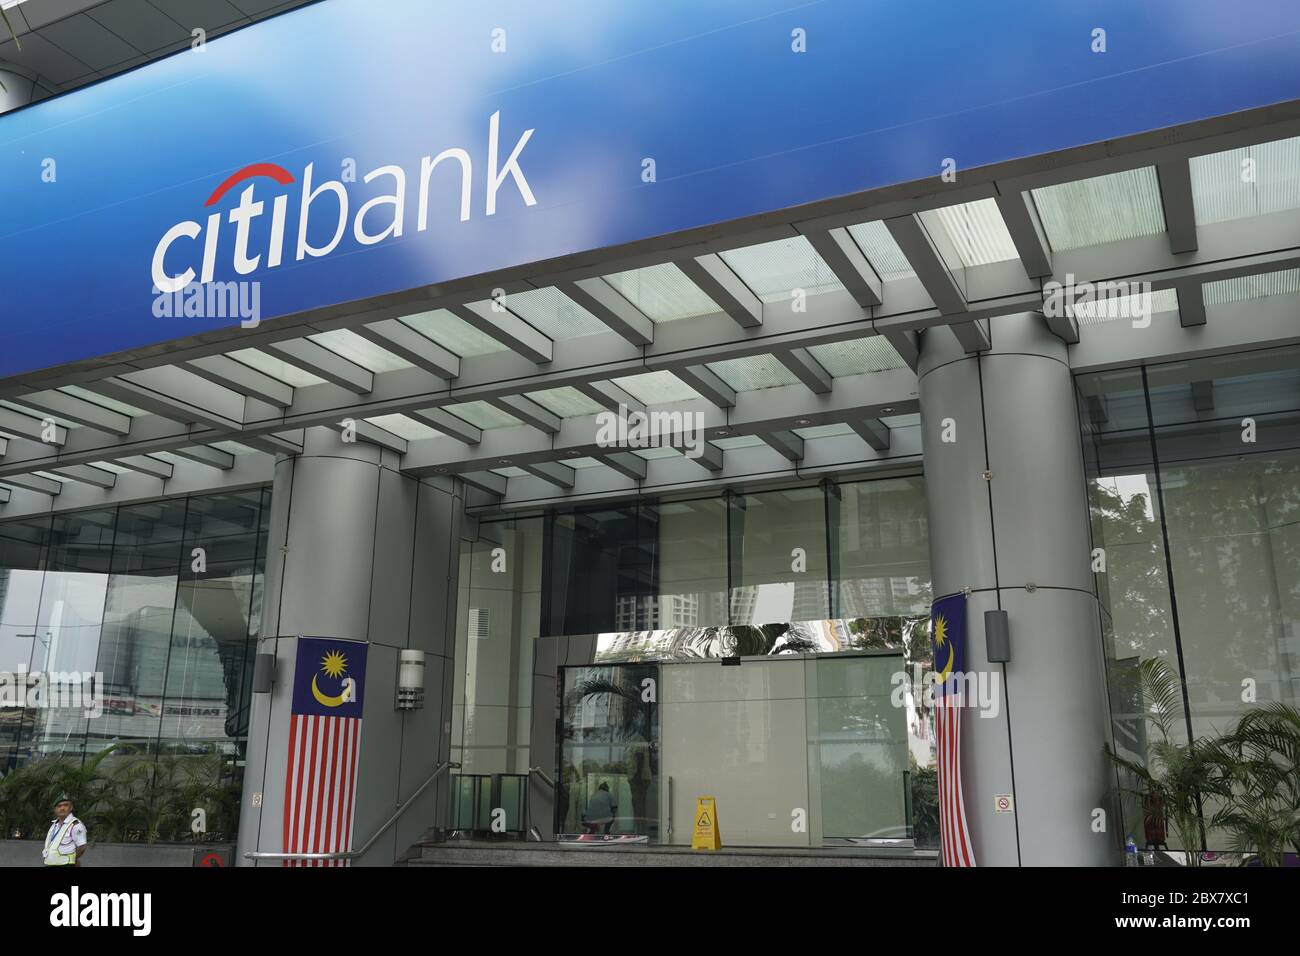 Citibank malaysia closing down